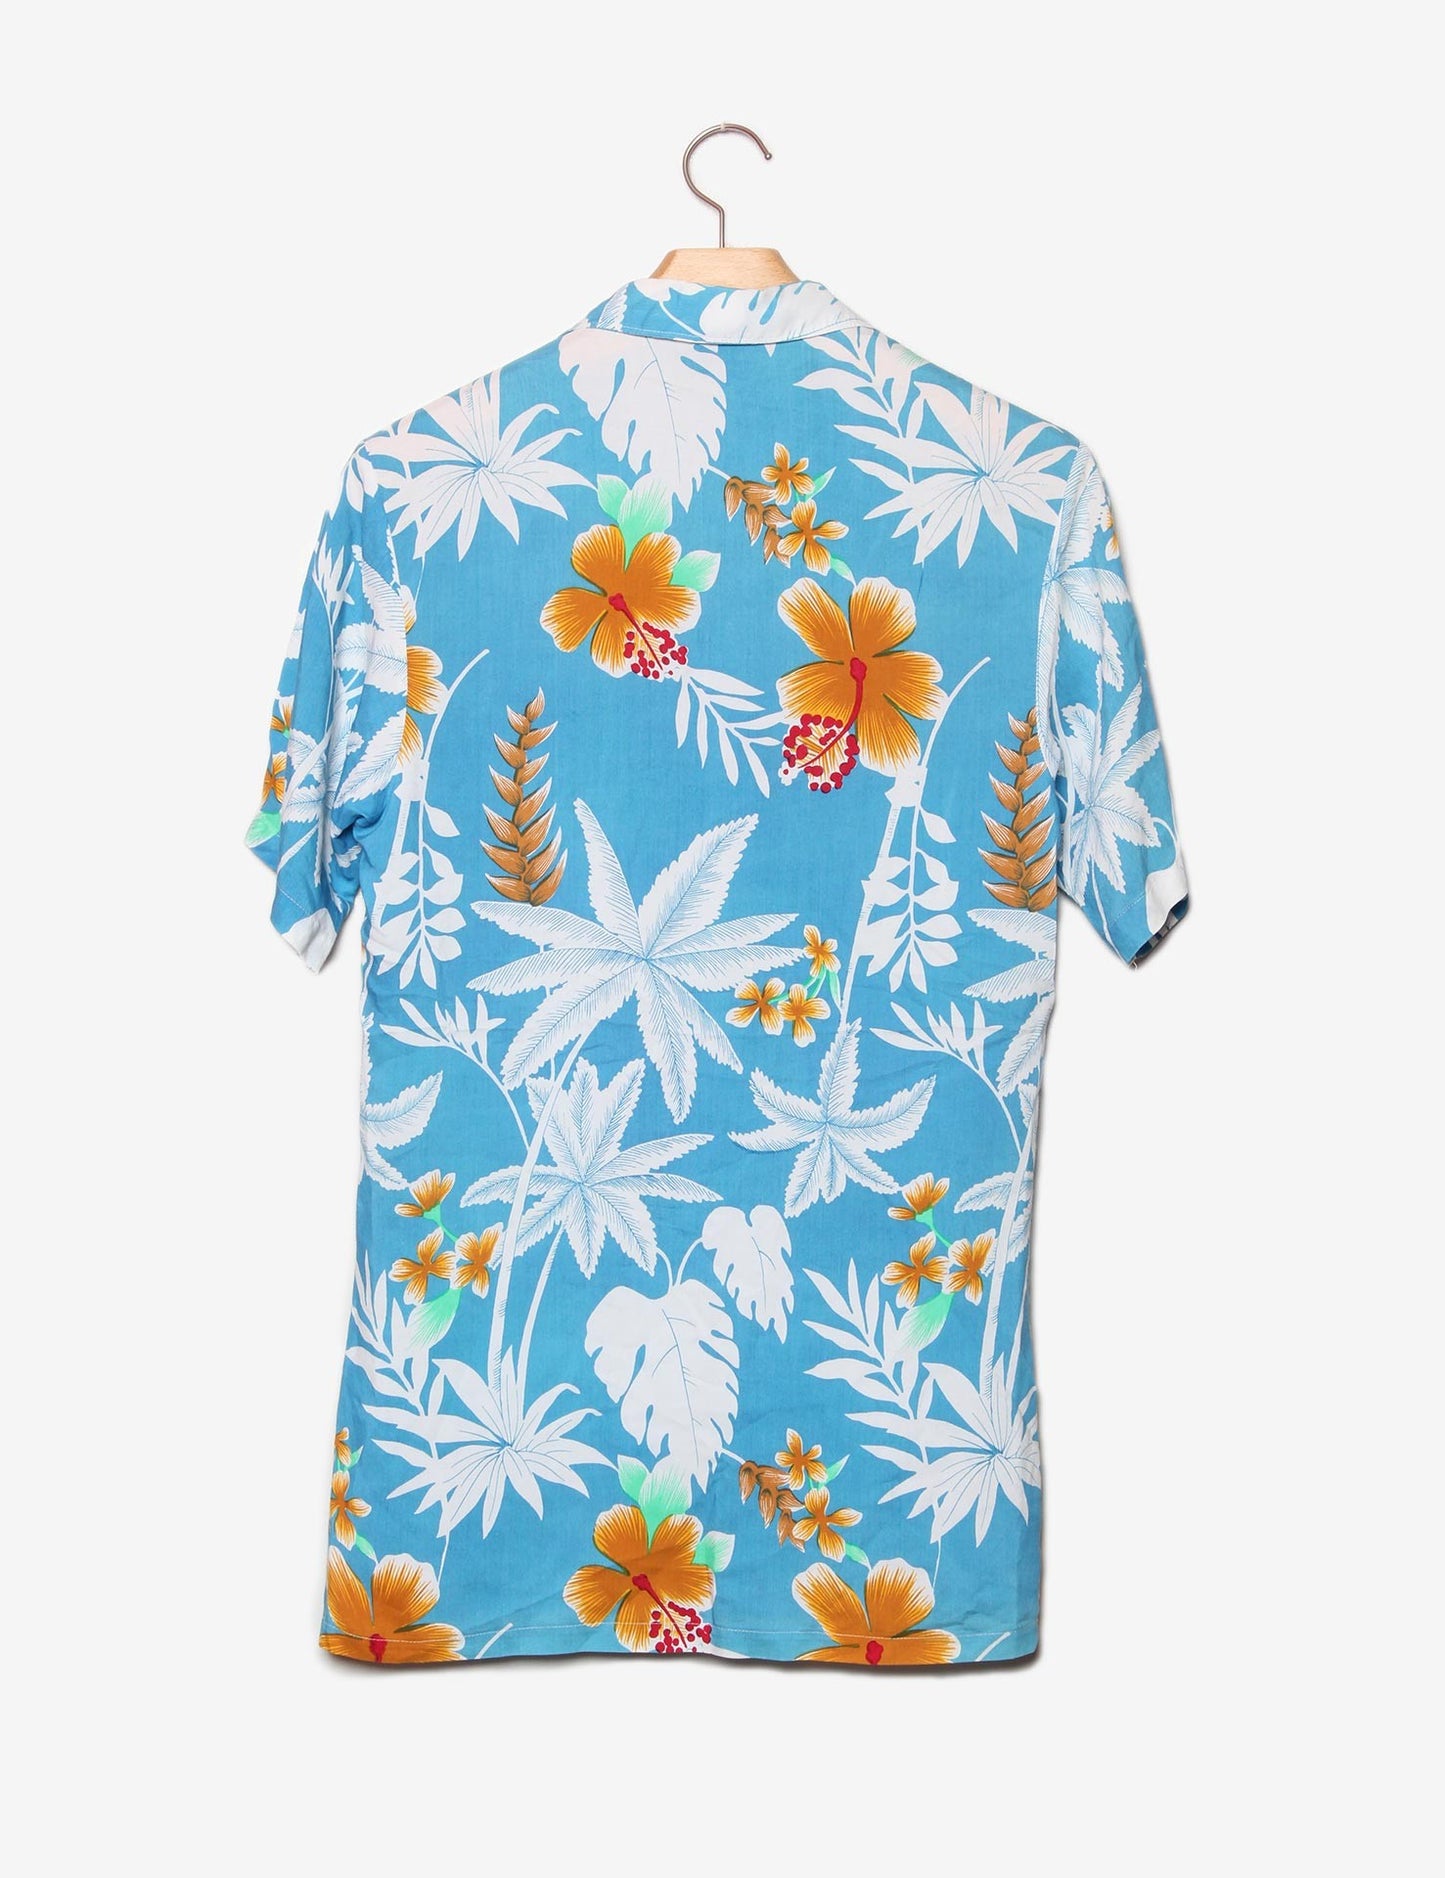 Camicia hawaiana-Vintage-retro.jpg